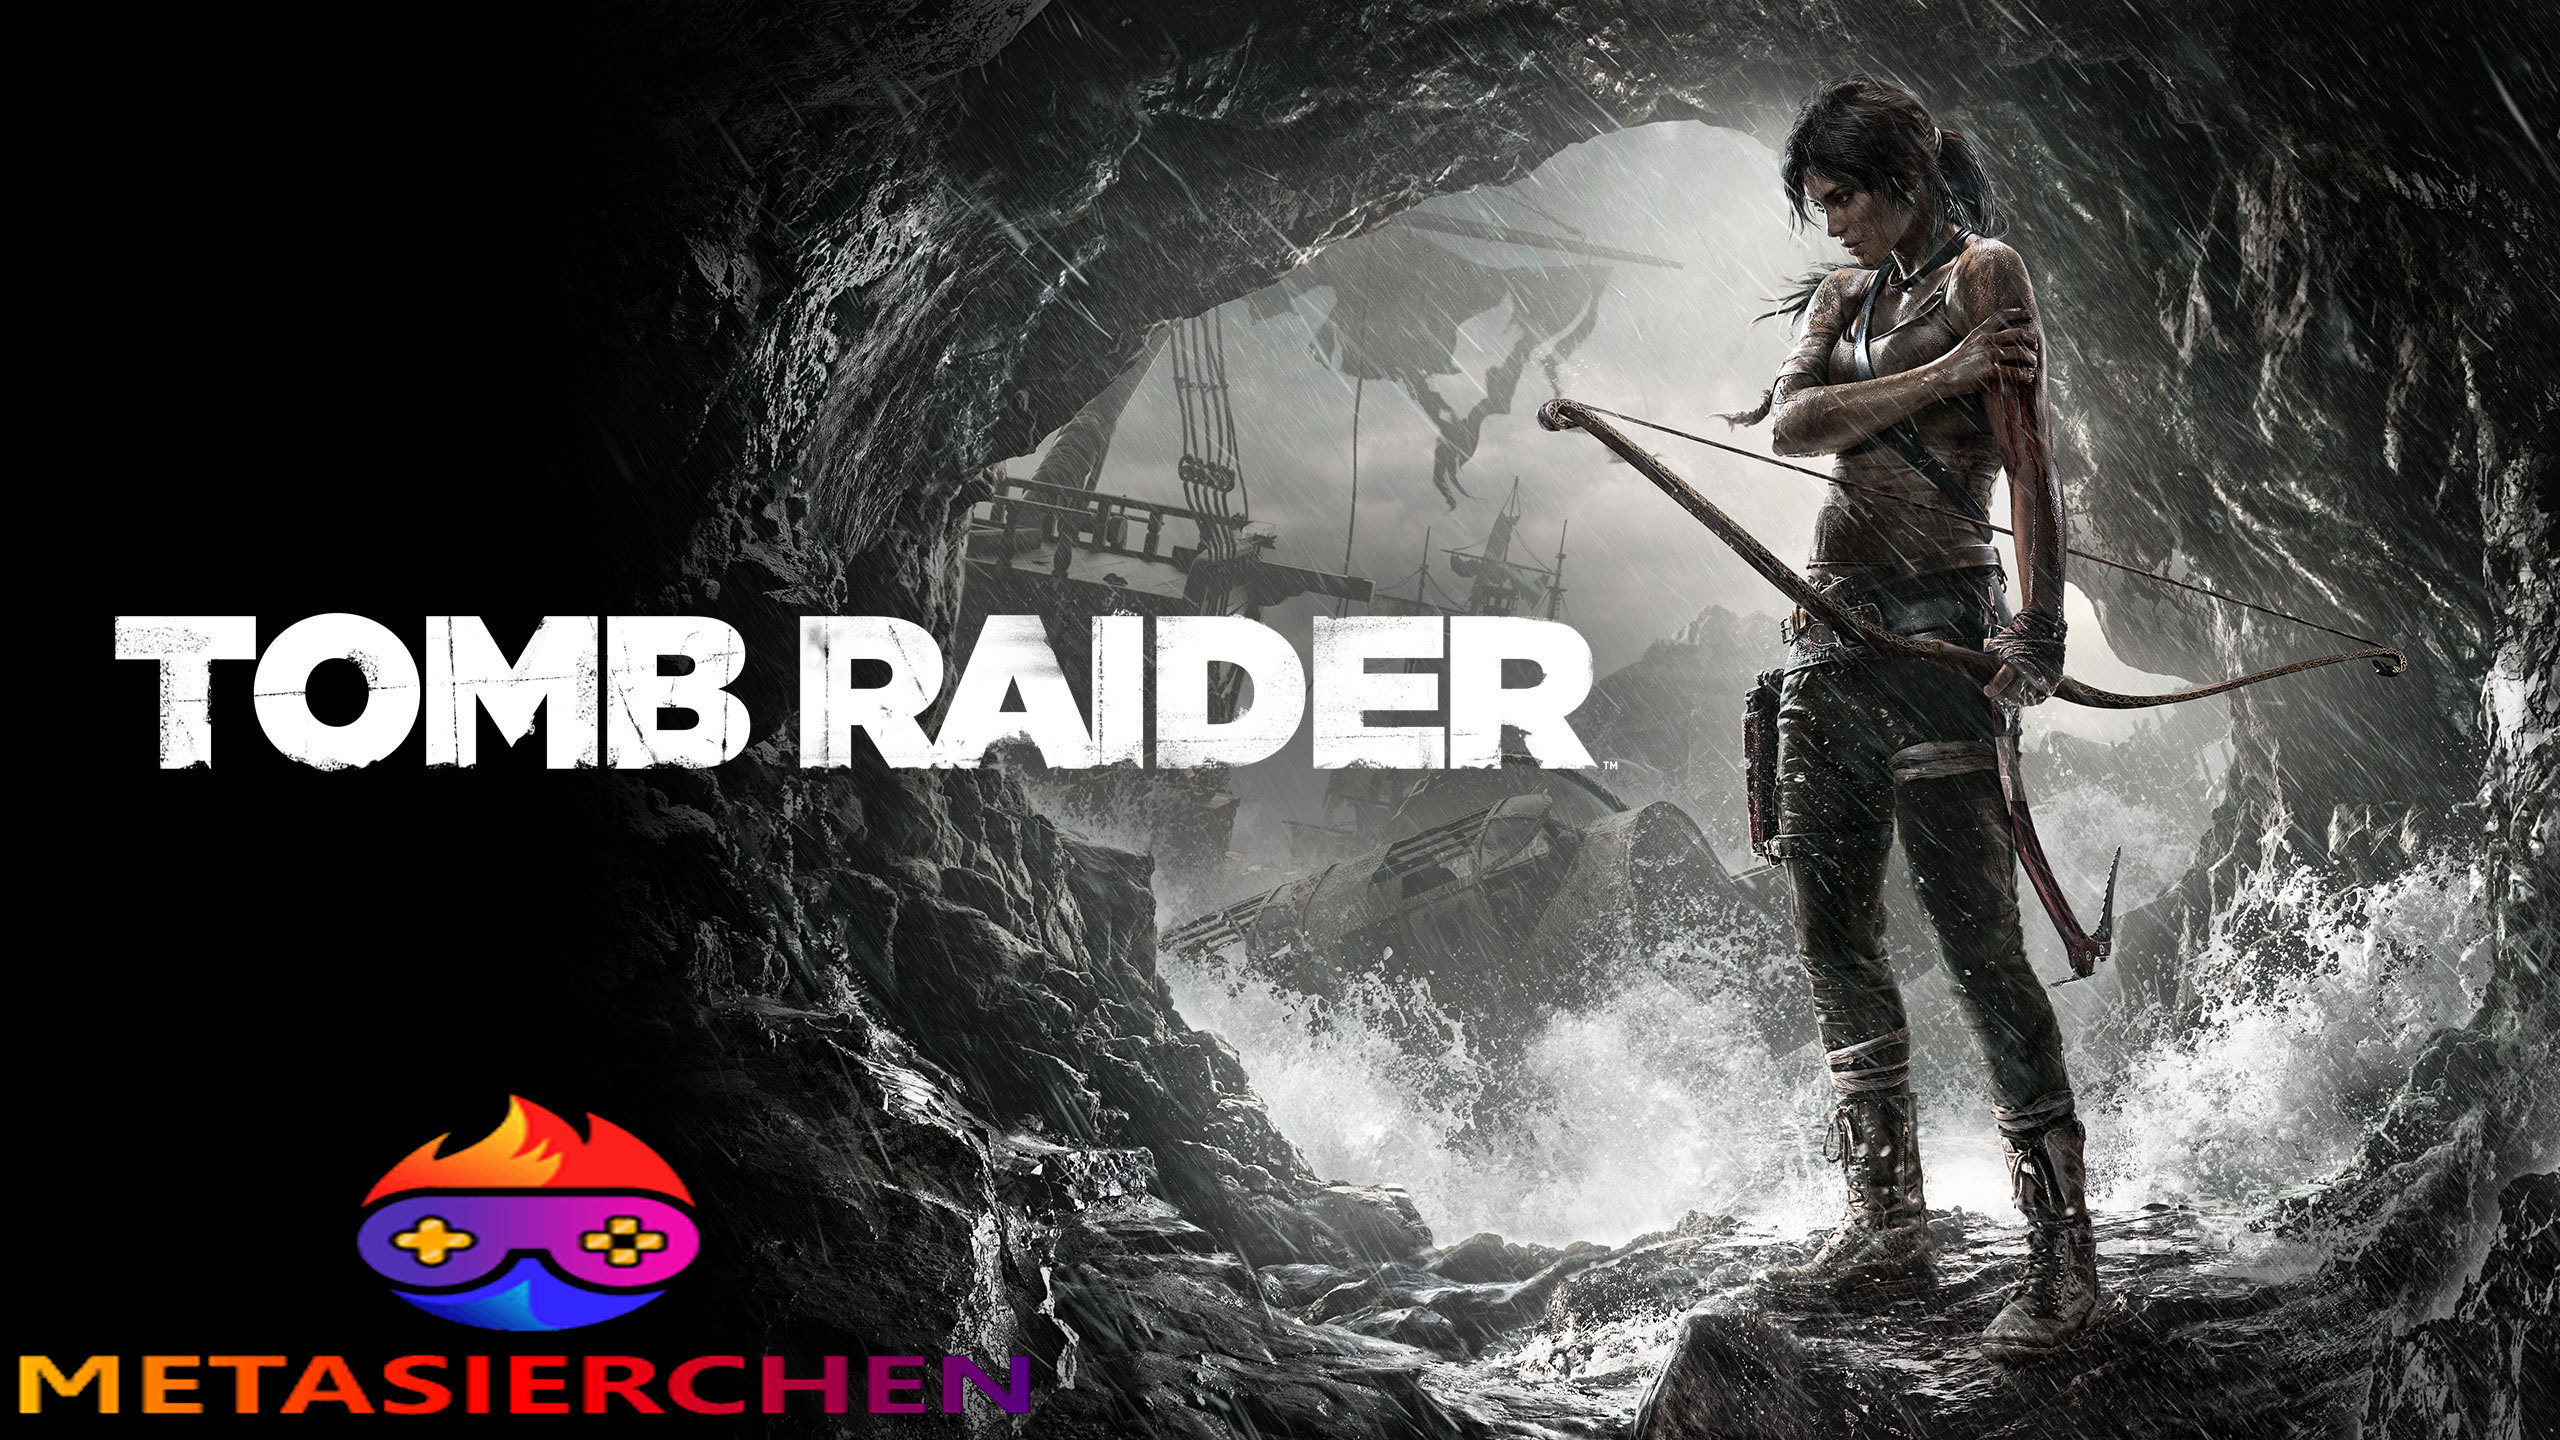 Tomb Raider's